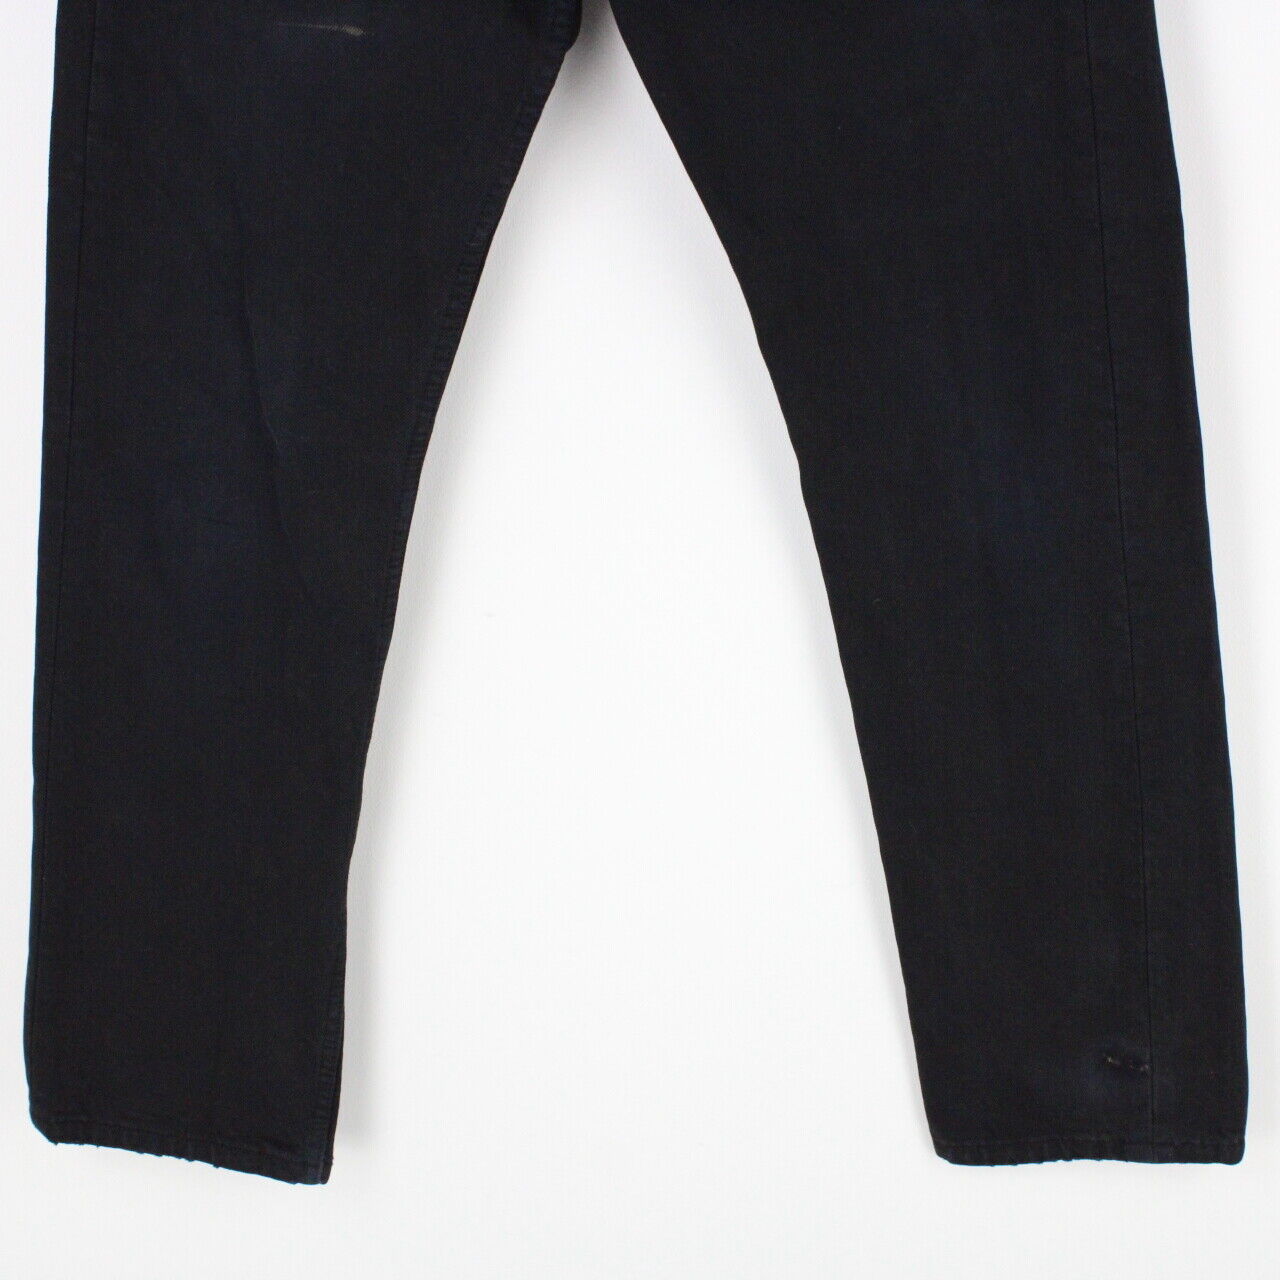 Mens LEVIS 501 Jeans Black | W29 L32